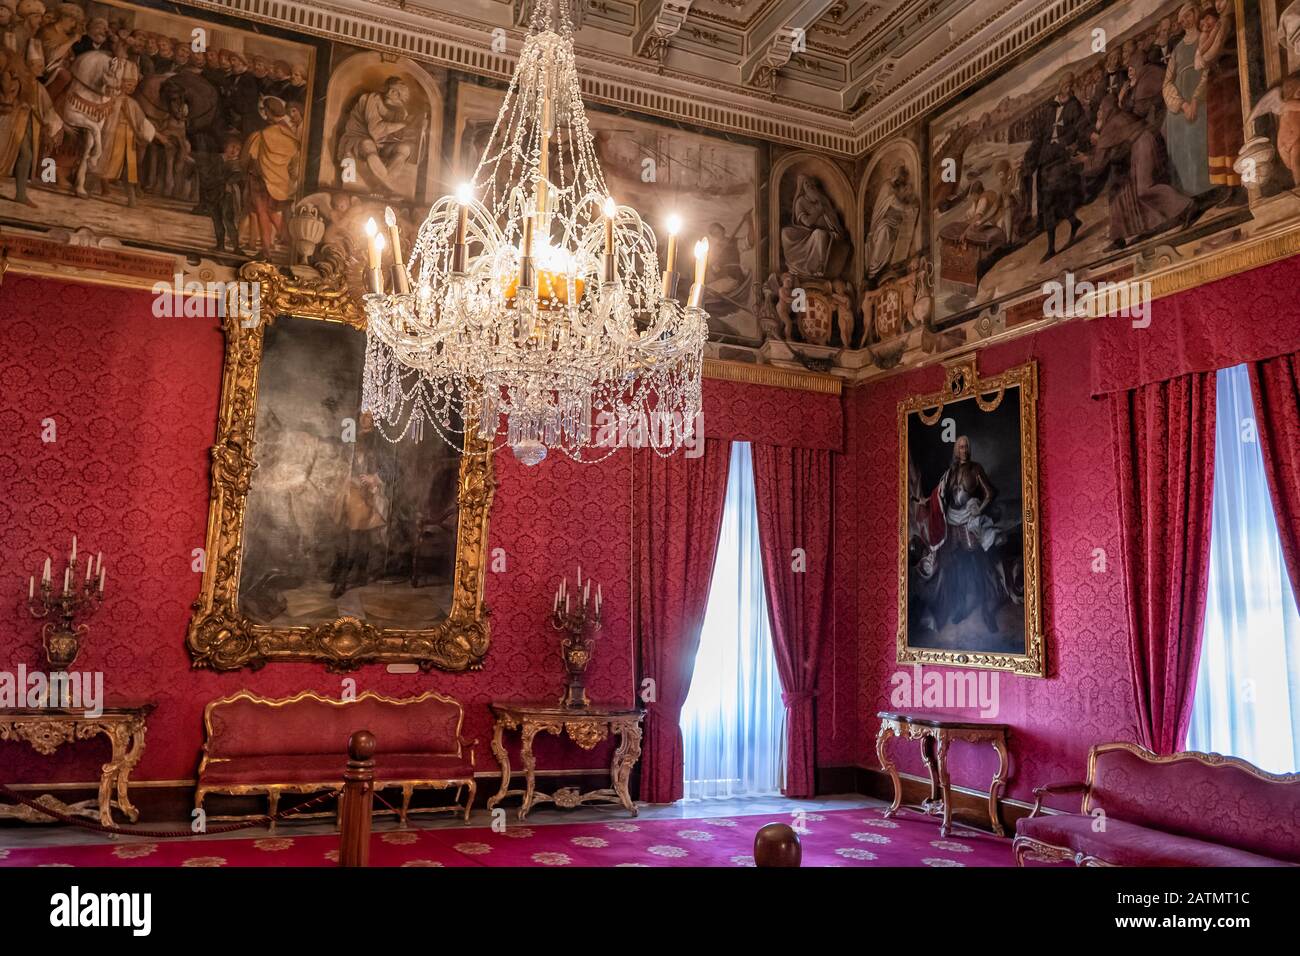 L'intérieur du Palais Grandmaster à la Valette, la salle de l'Ambassadeur ou la salle Rouge, salle d'audience du grand maître et président de Malte Banque D'Images